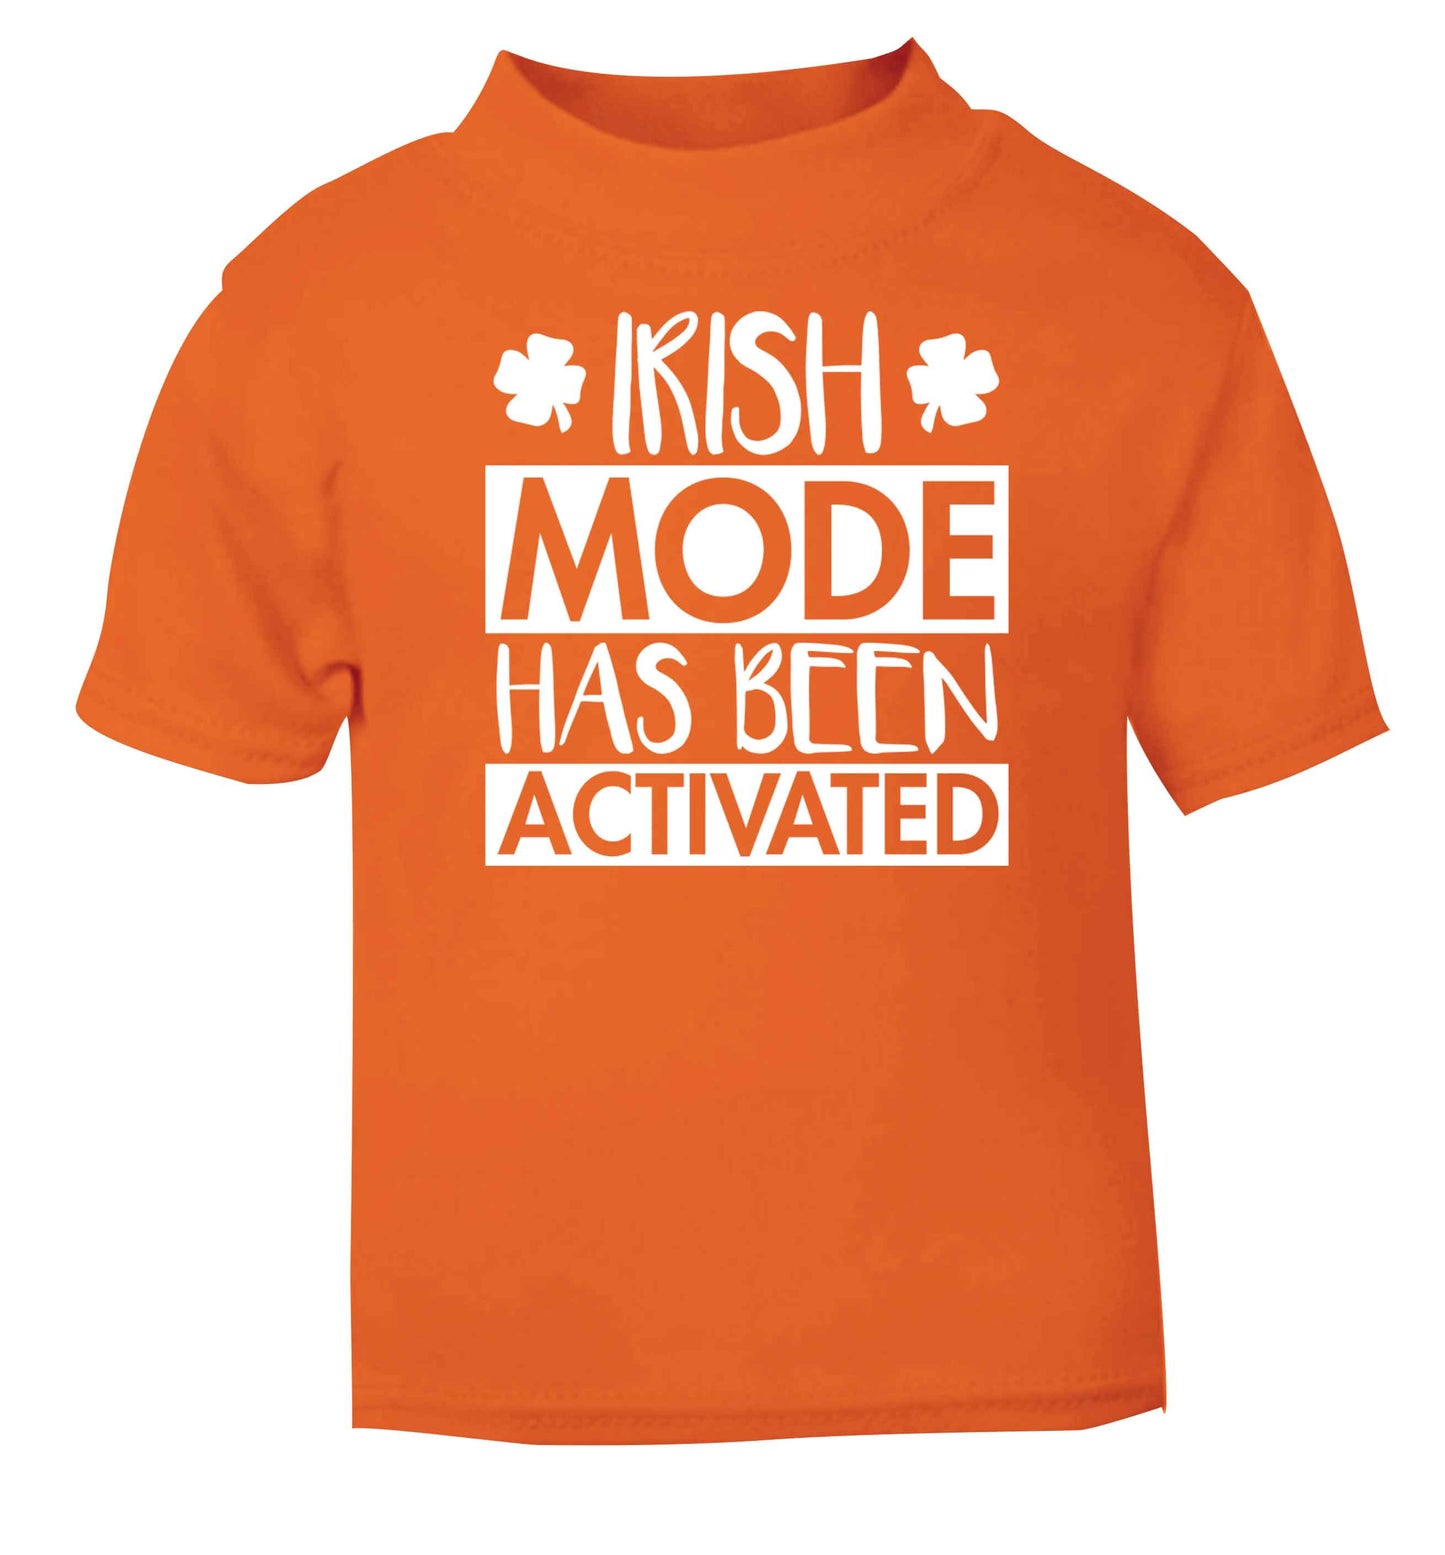 Irish mode has been activated orange baby toddler Tshirt 2 Years